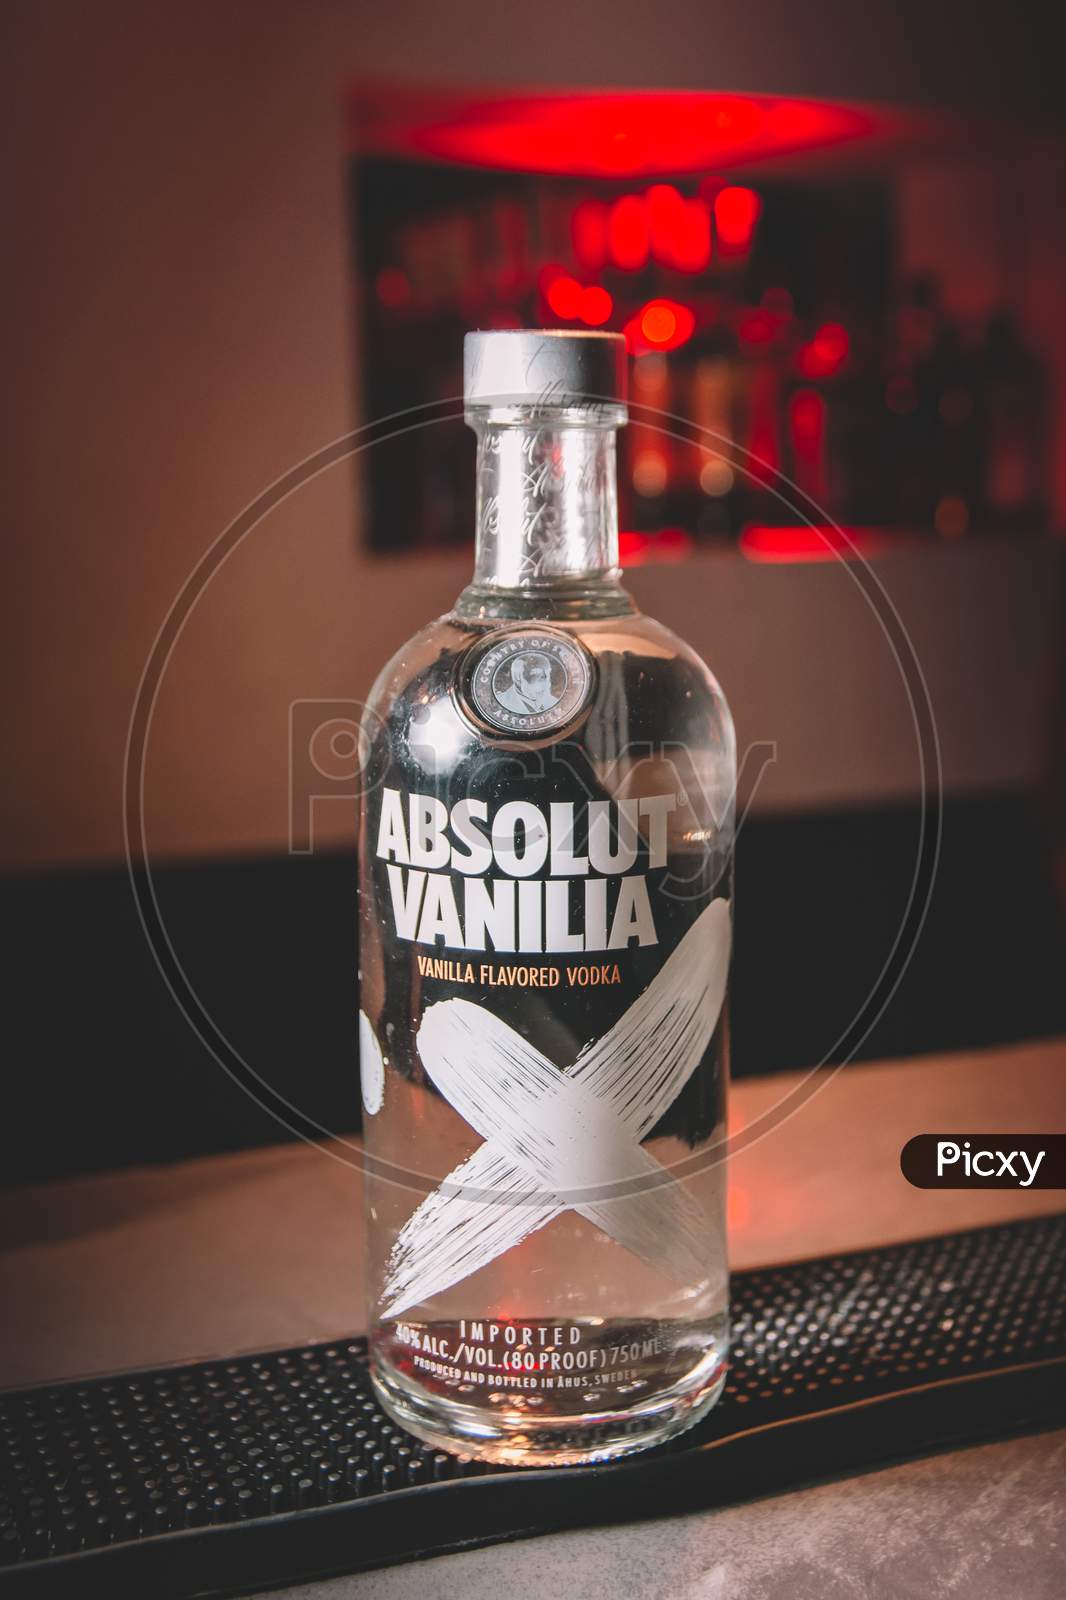 Bottle Of Absolut Vanilia Vodka